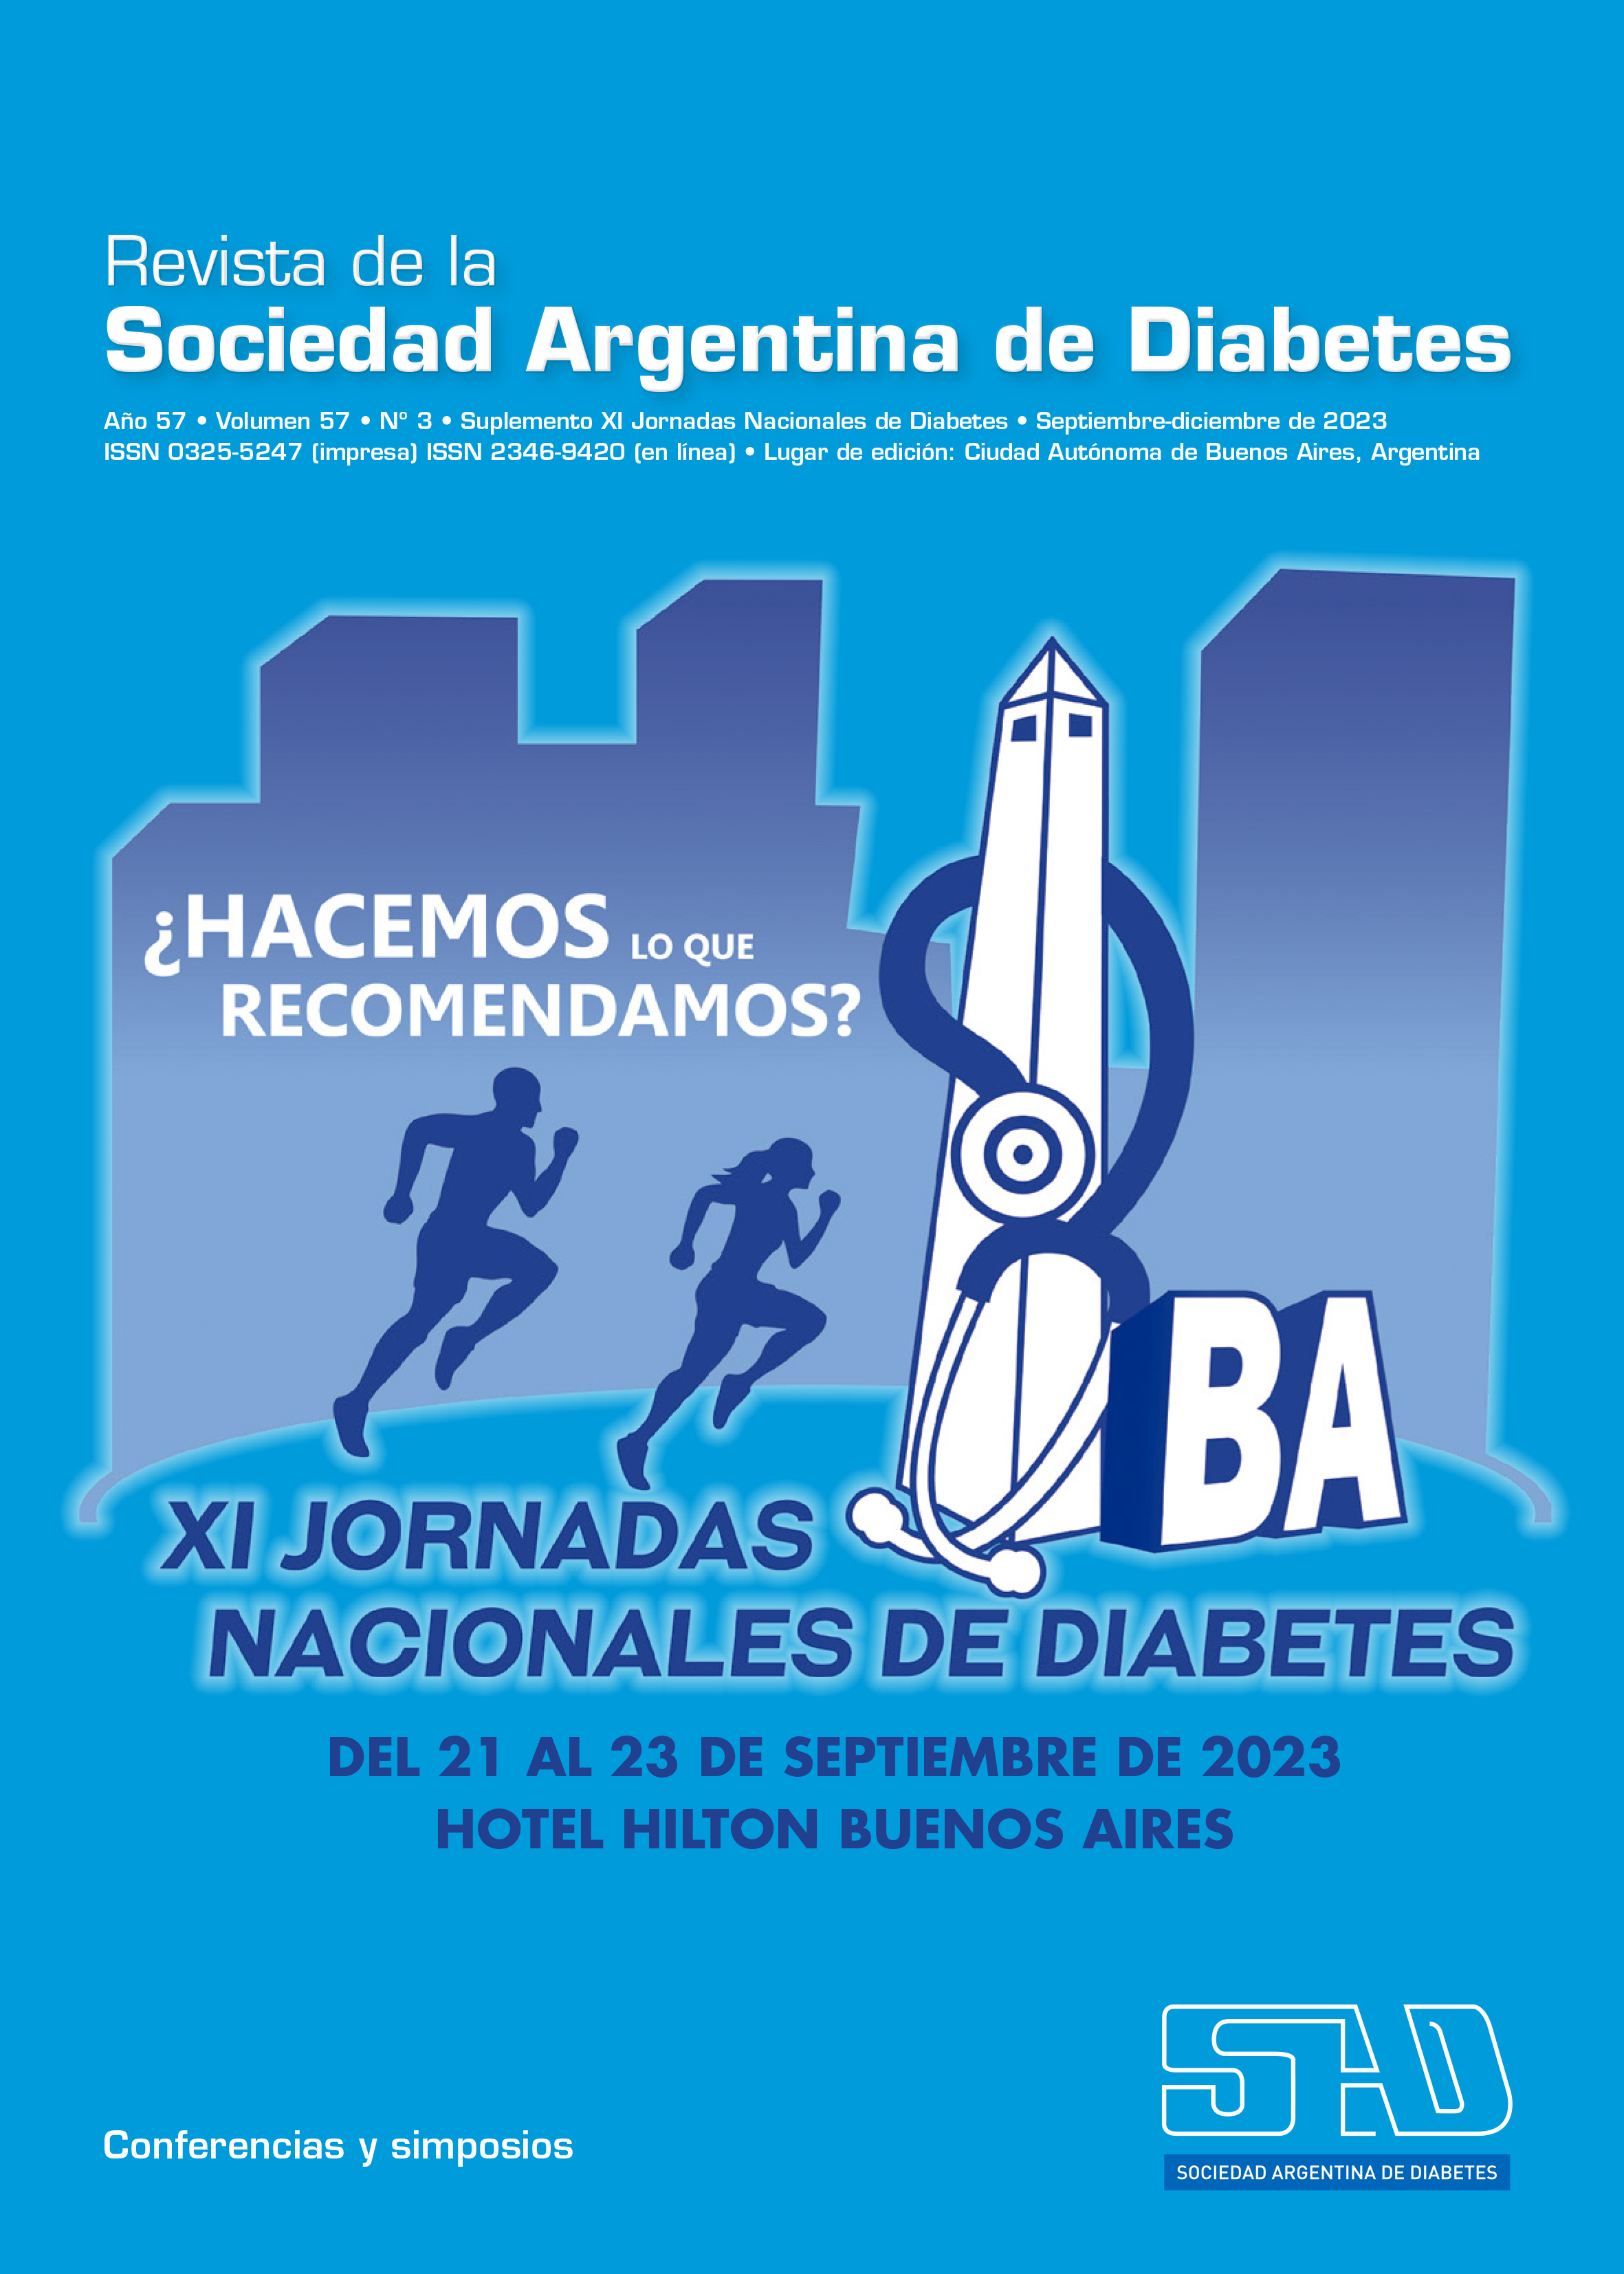 Suplemento XI Jornadas Nacionales de Diabetes